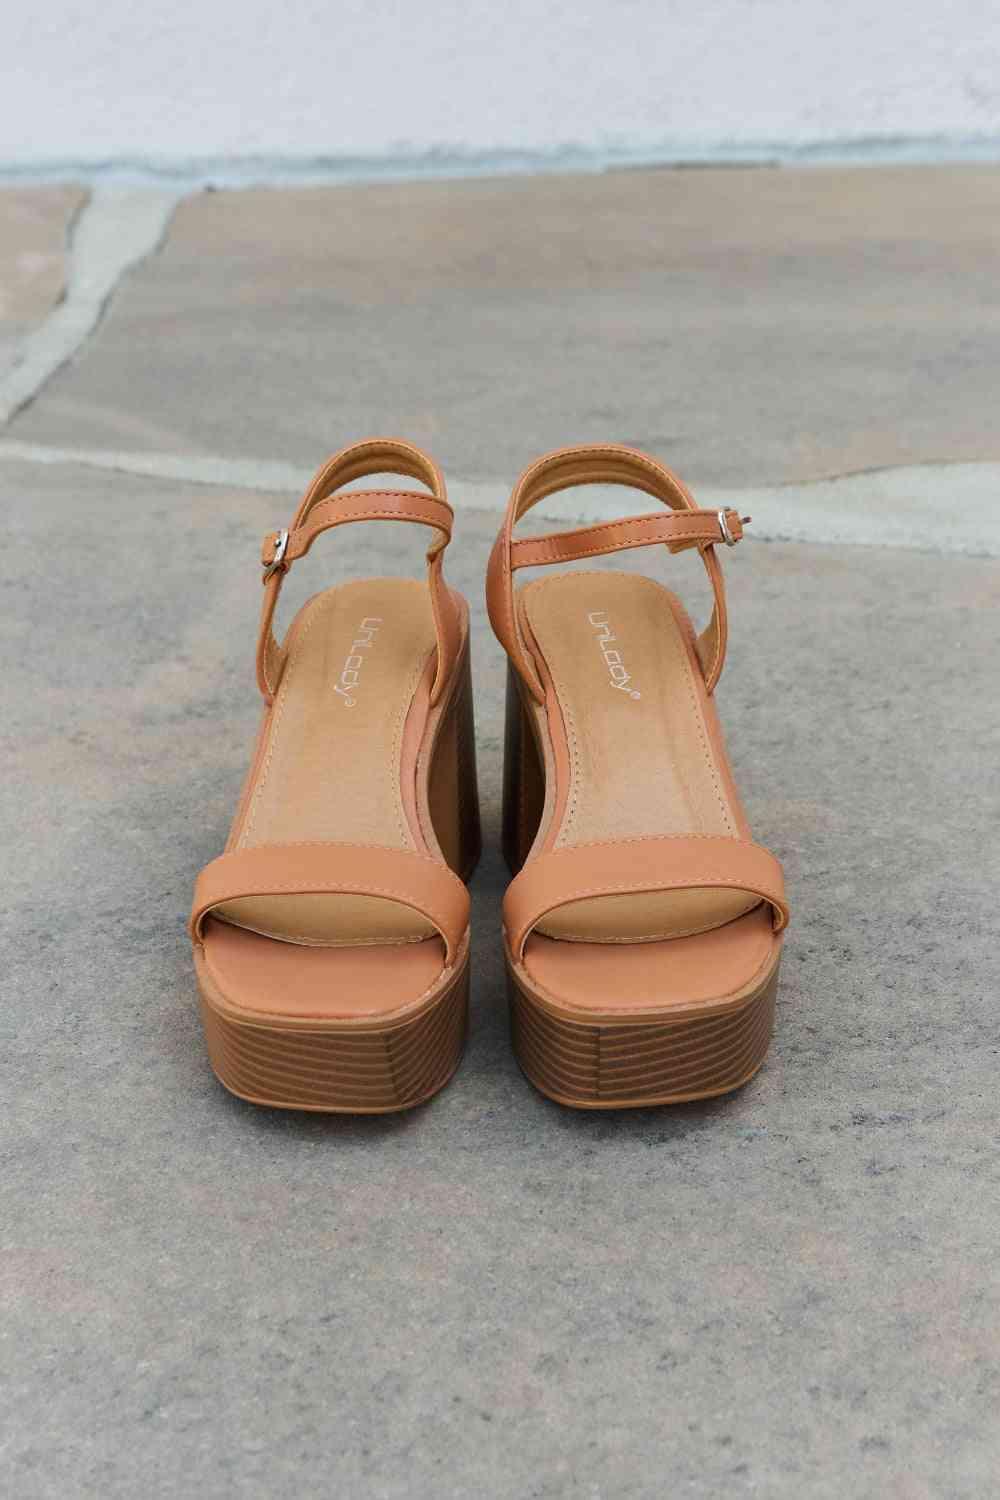 Weeboo Feel It Platform Heel Sandals - Closet of Ren